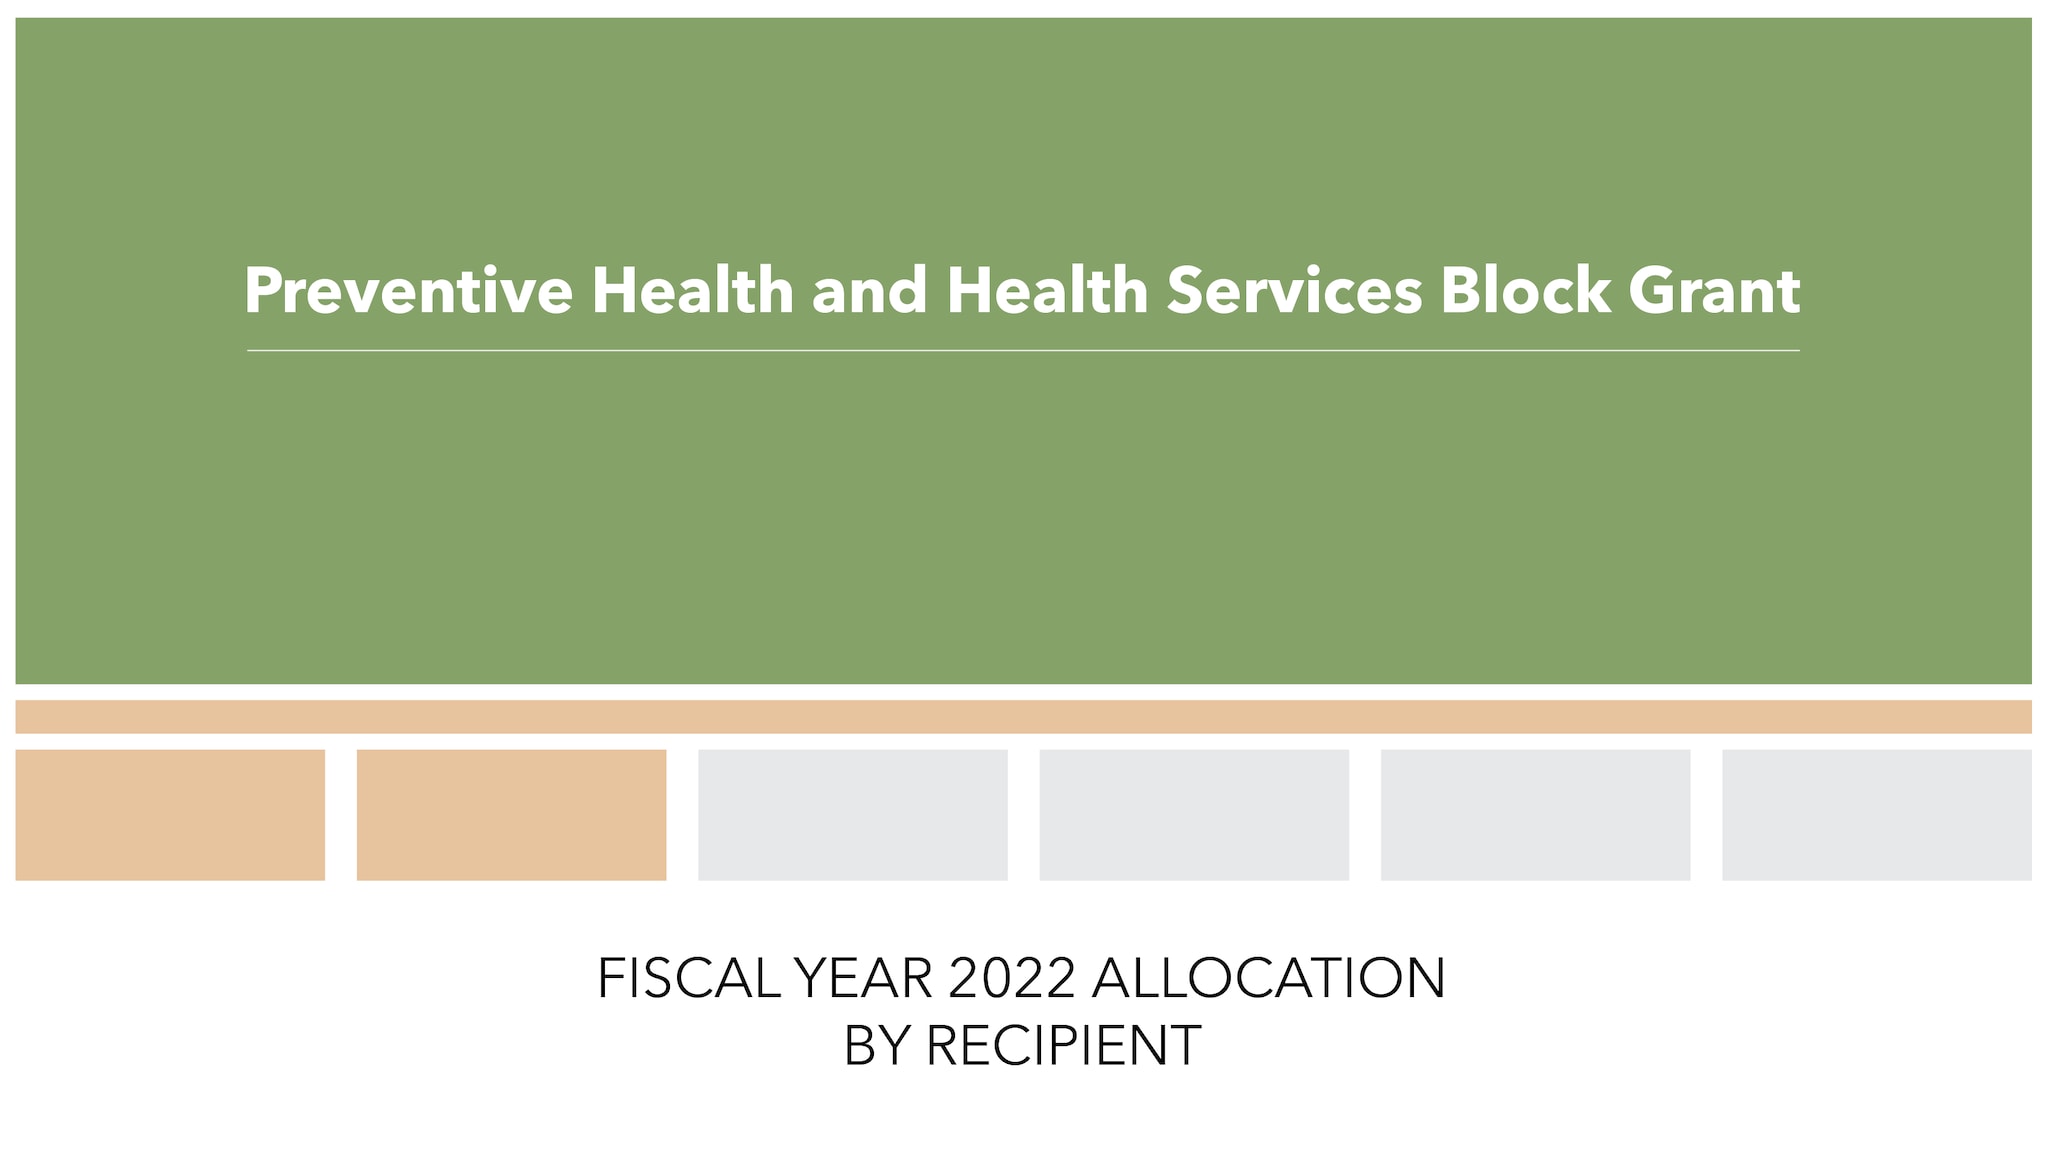 Preventive Health and Health Services Block Grant slide